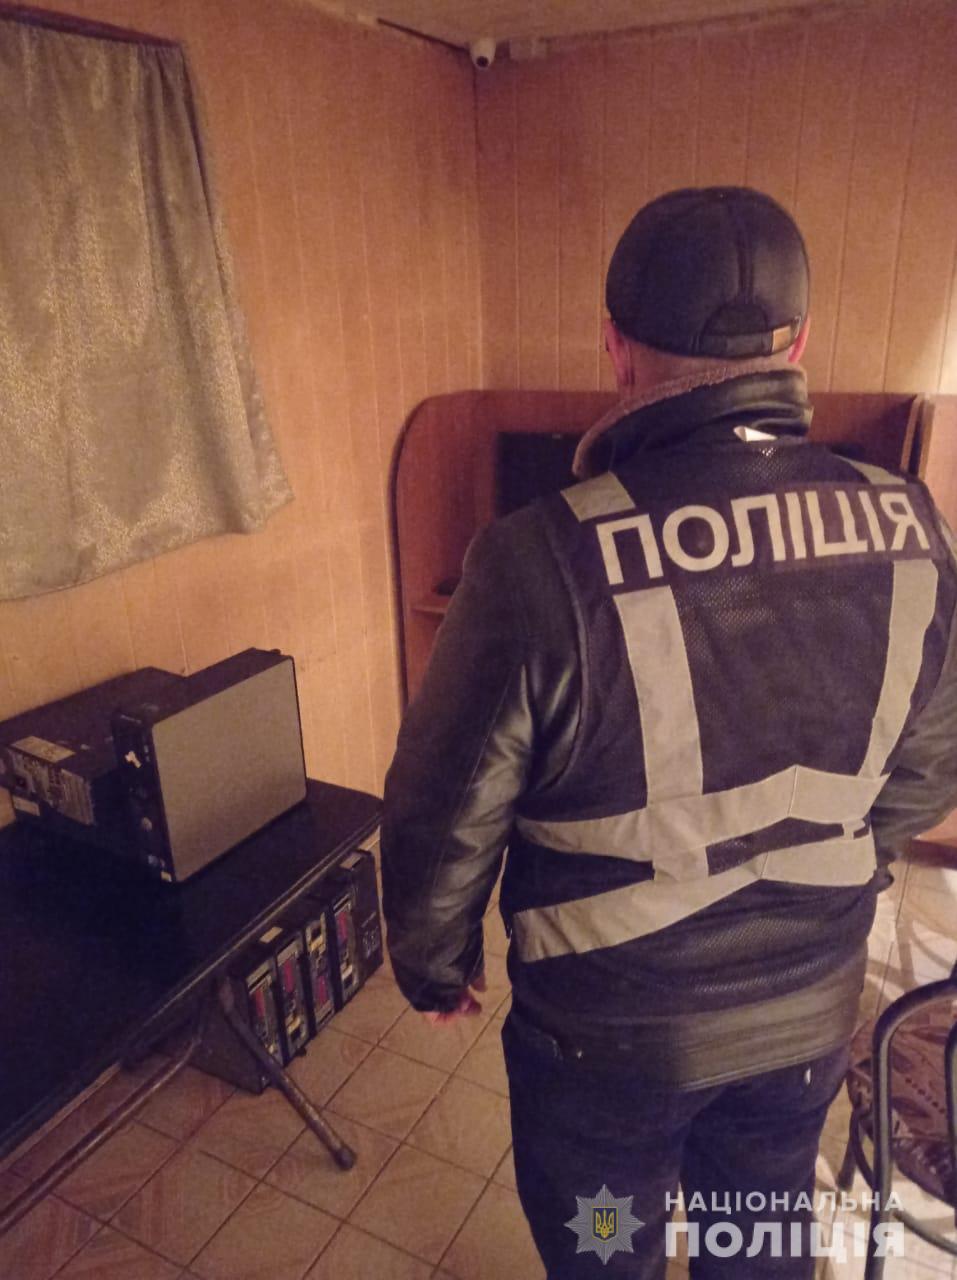 В селе Болградского района полиция прикрыла зал игровых автоматов, обустроенный в подвале жилого дома